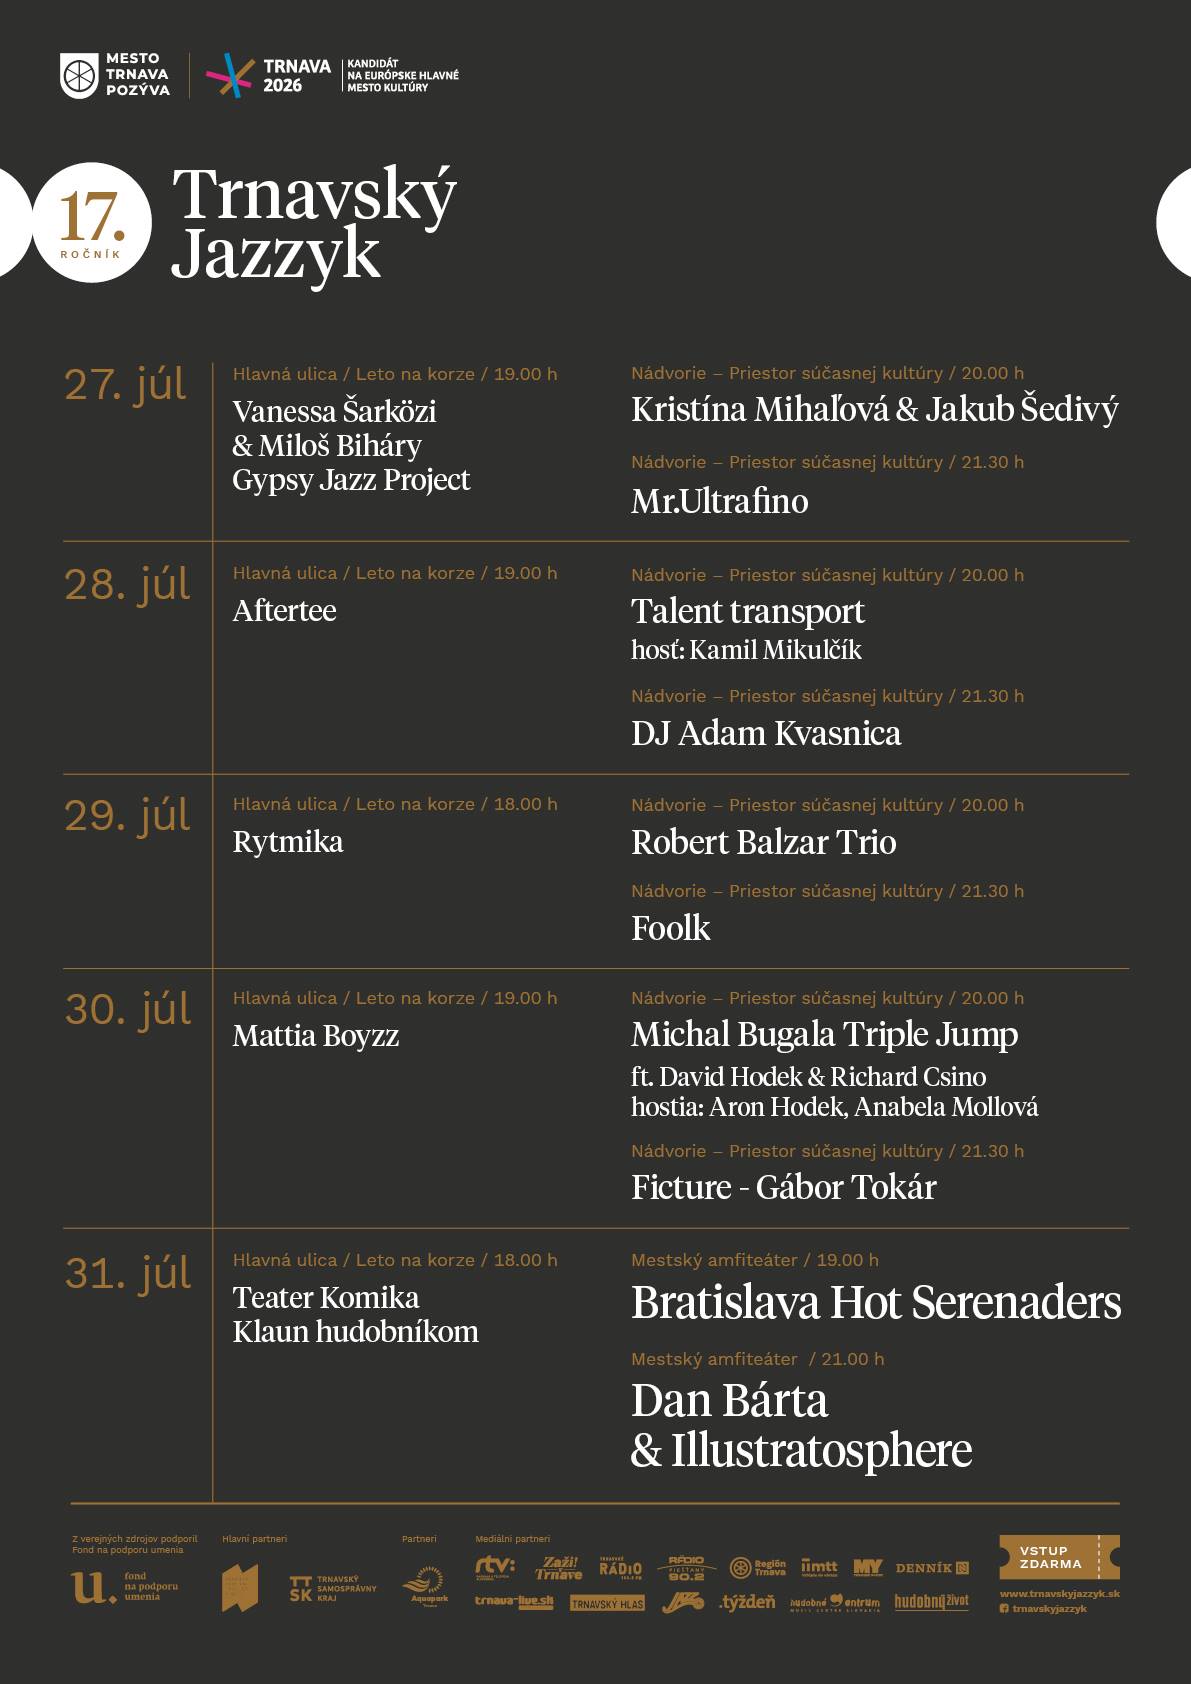 NOV - - - Trnavsk jazzyk 2020